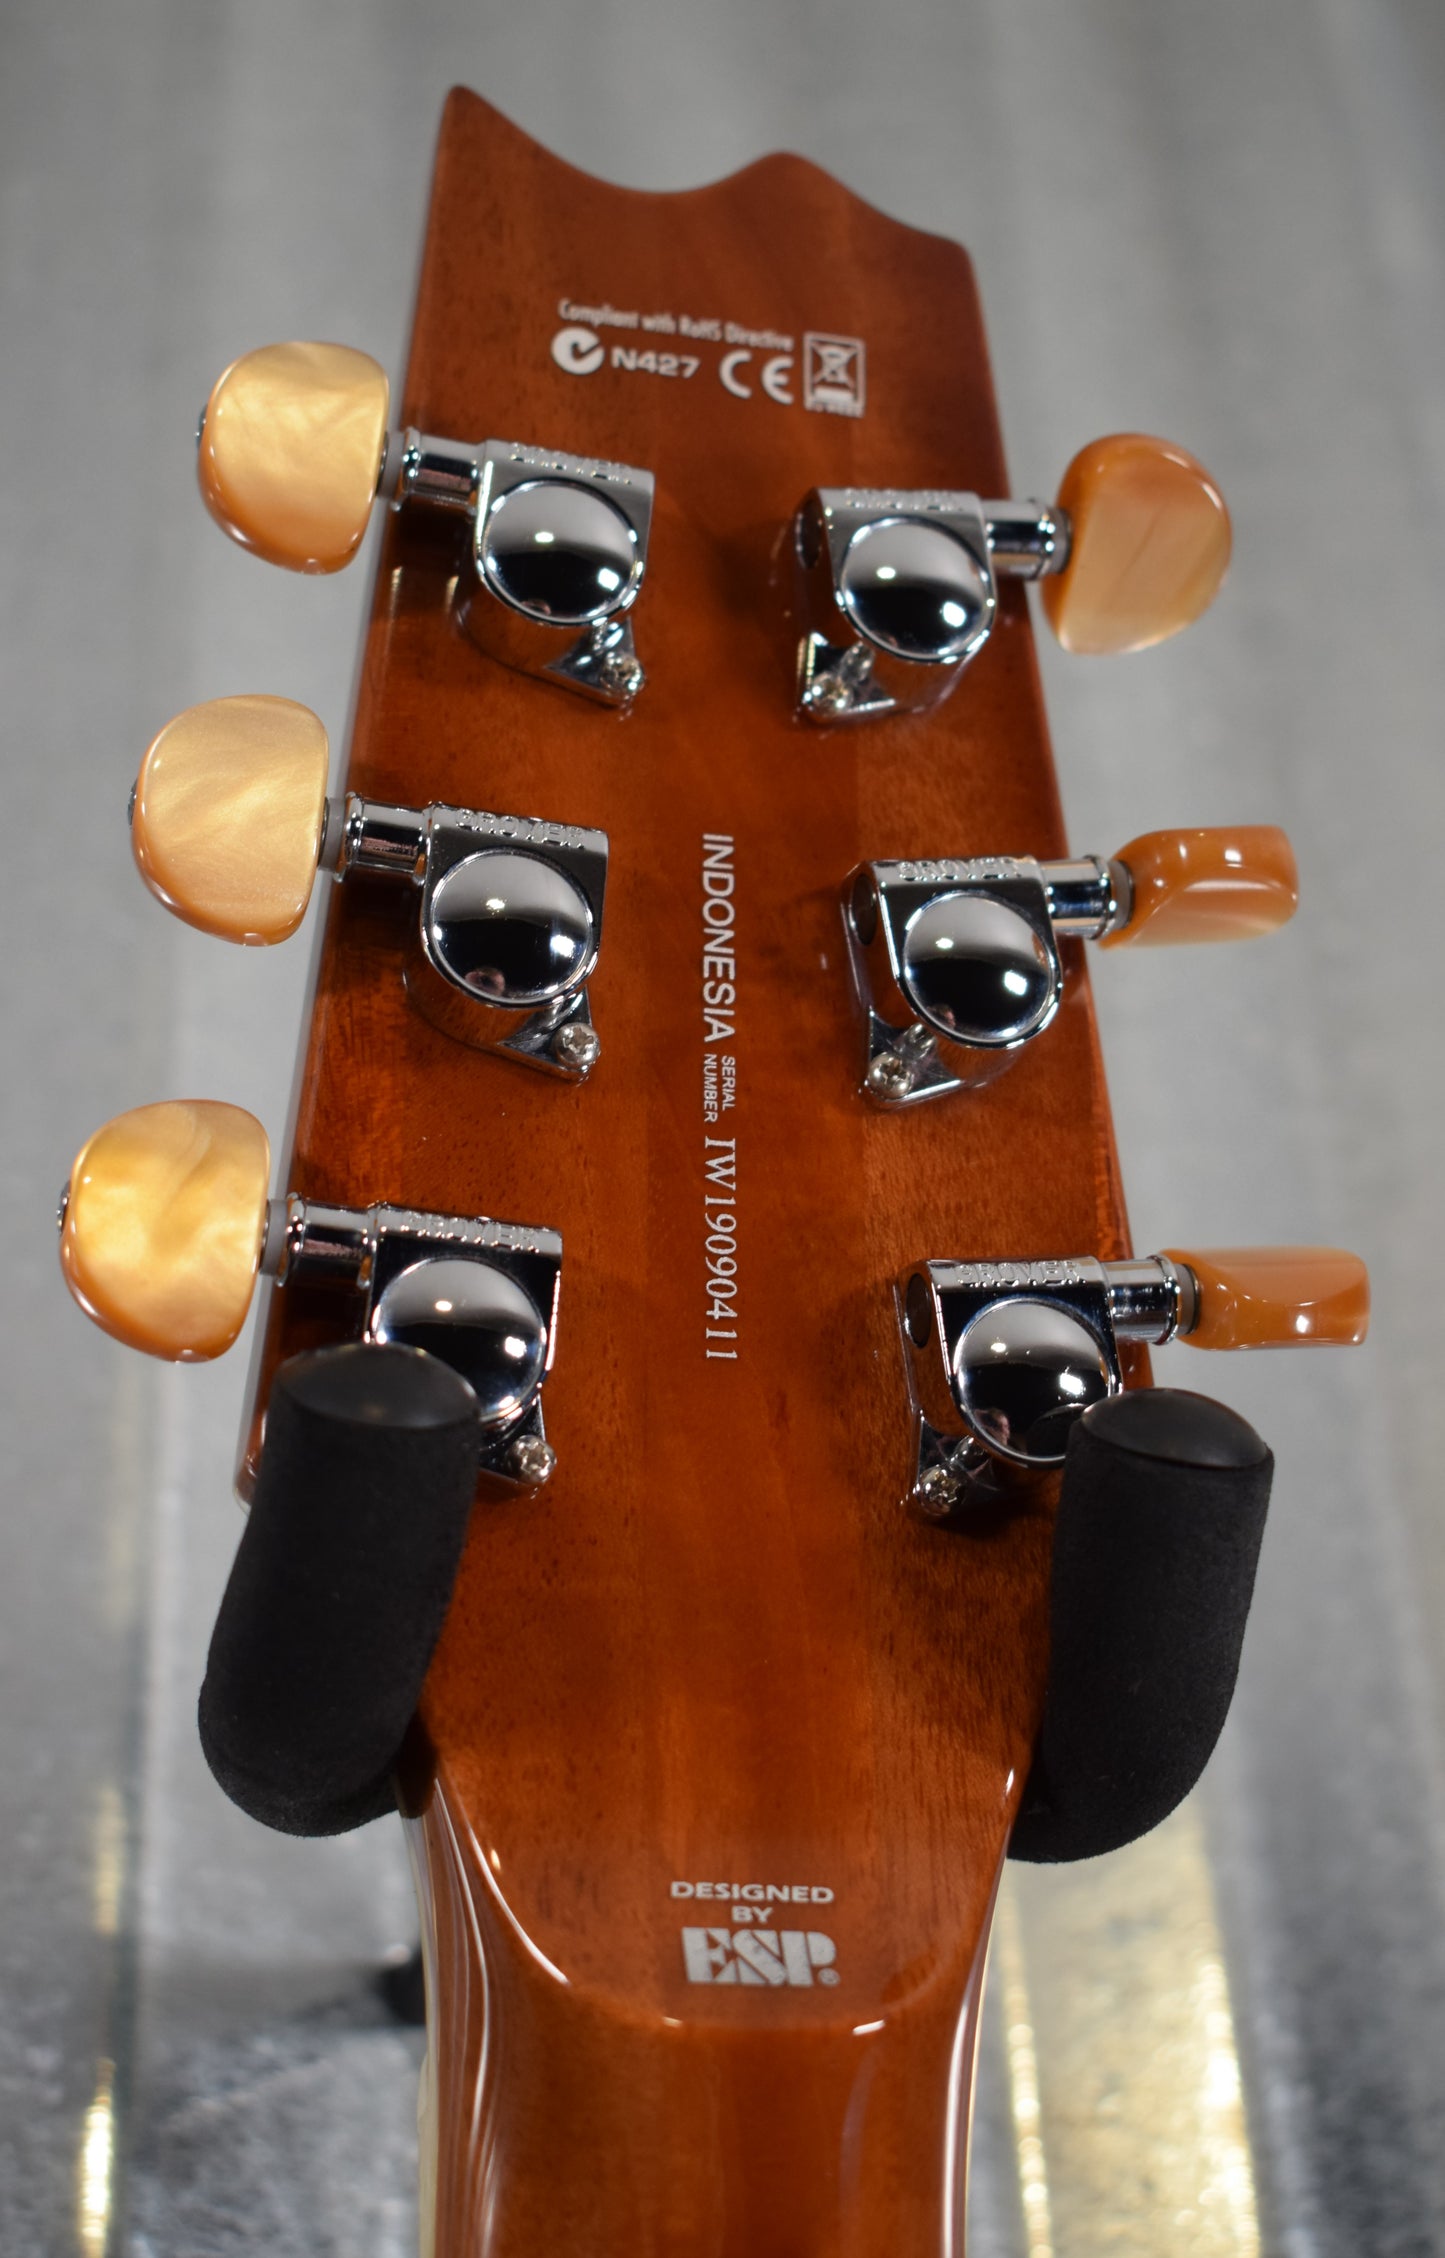 ESP LTD TL-6 Aqua Marine Mist Acoustic Electric Guitar & Case TL6FMAQMB #0411